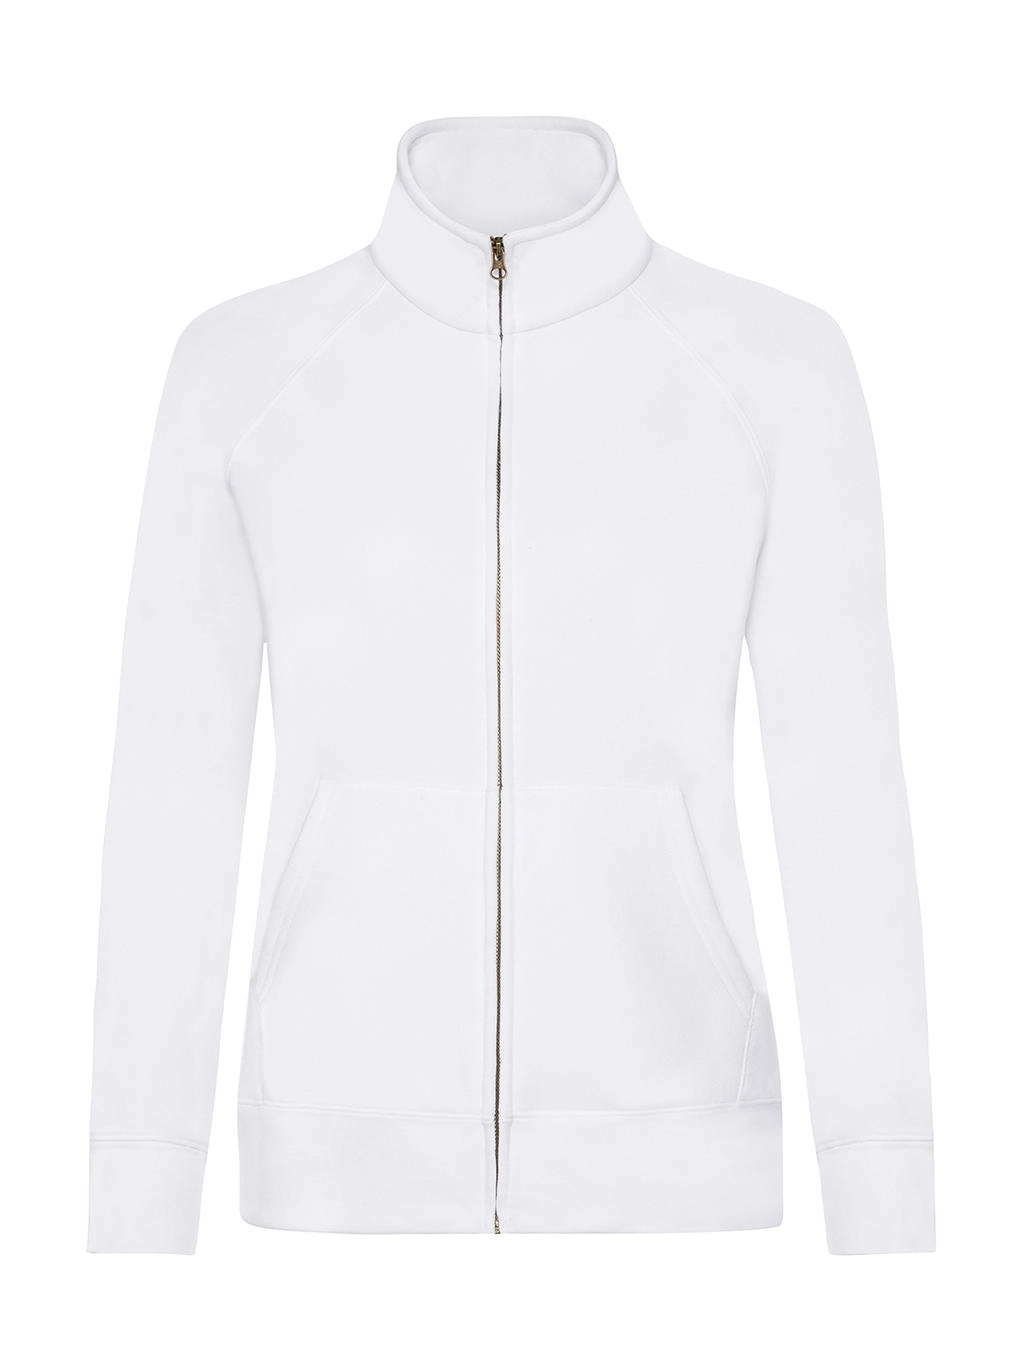 Ladies` Premium Sweat Jacket zum Besticken und Bedrucken in der Farbe White mit Ihren Logo, Schriftzug oder Motiv.